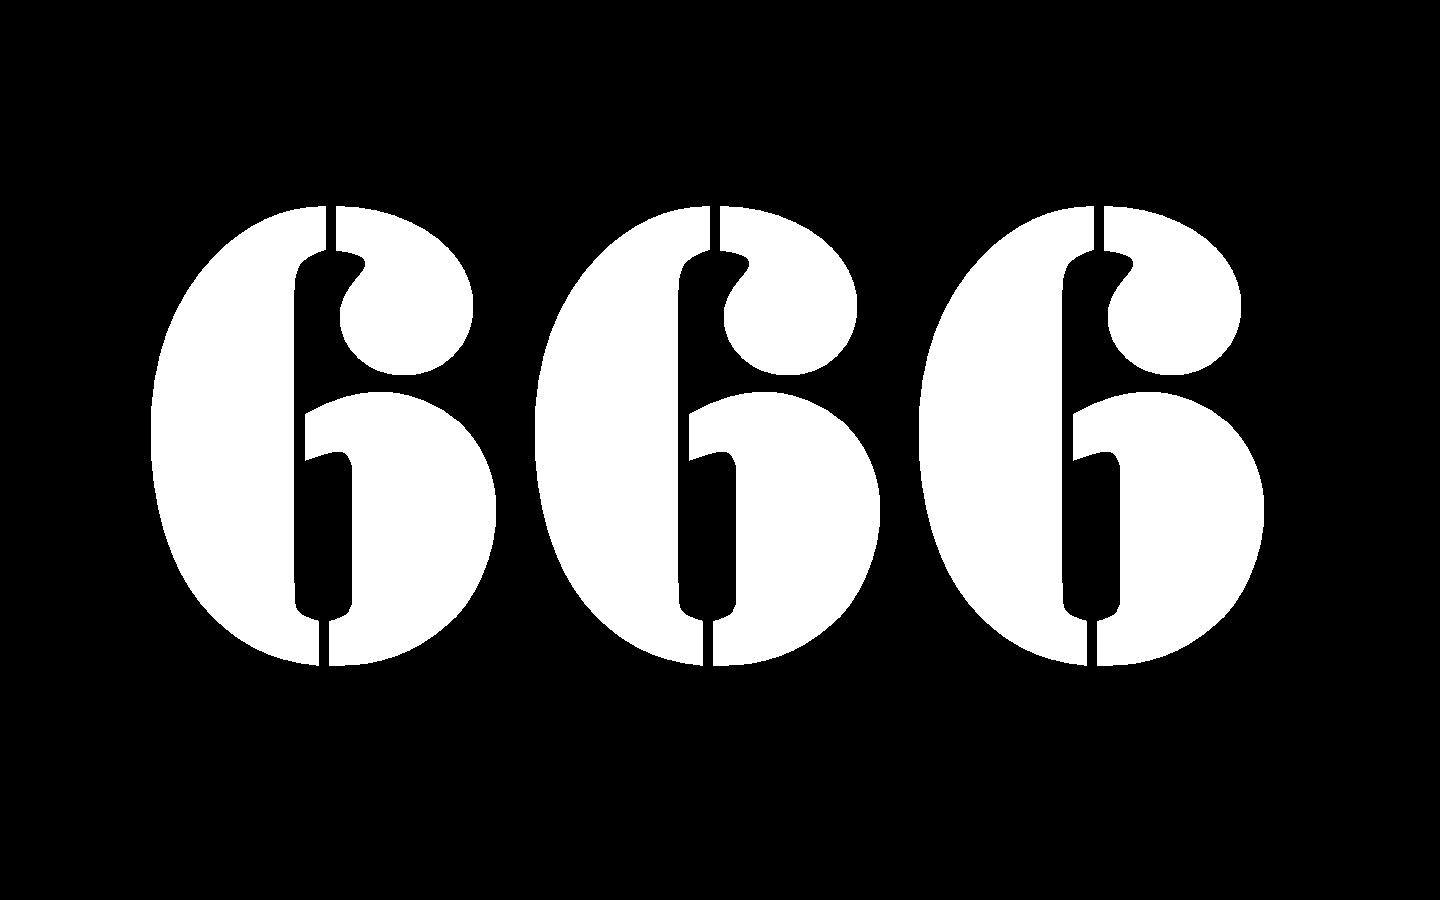 Sweet kiarita 666